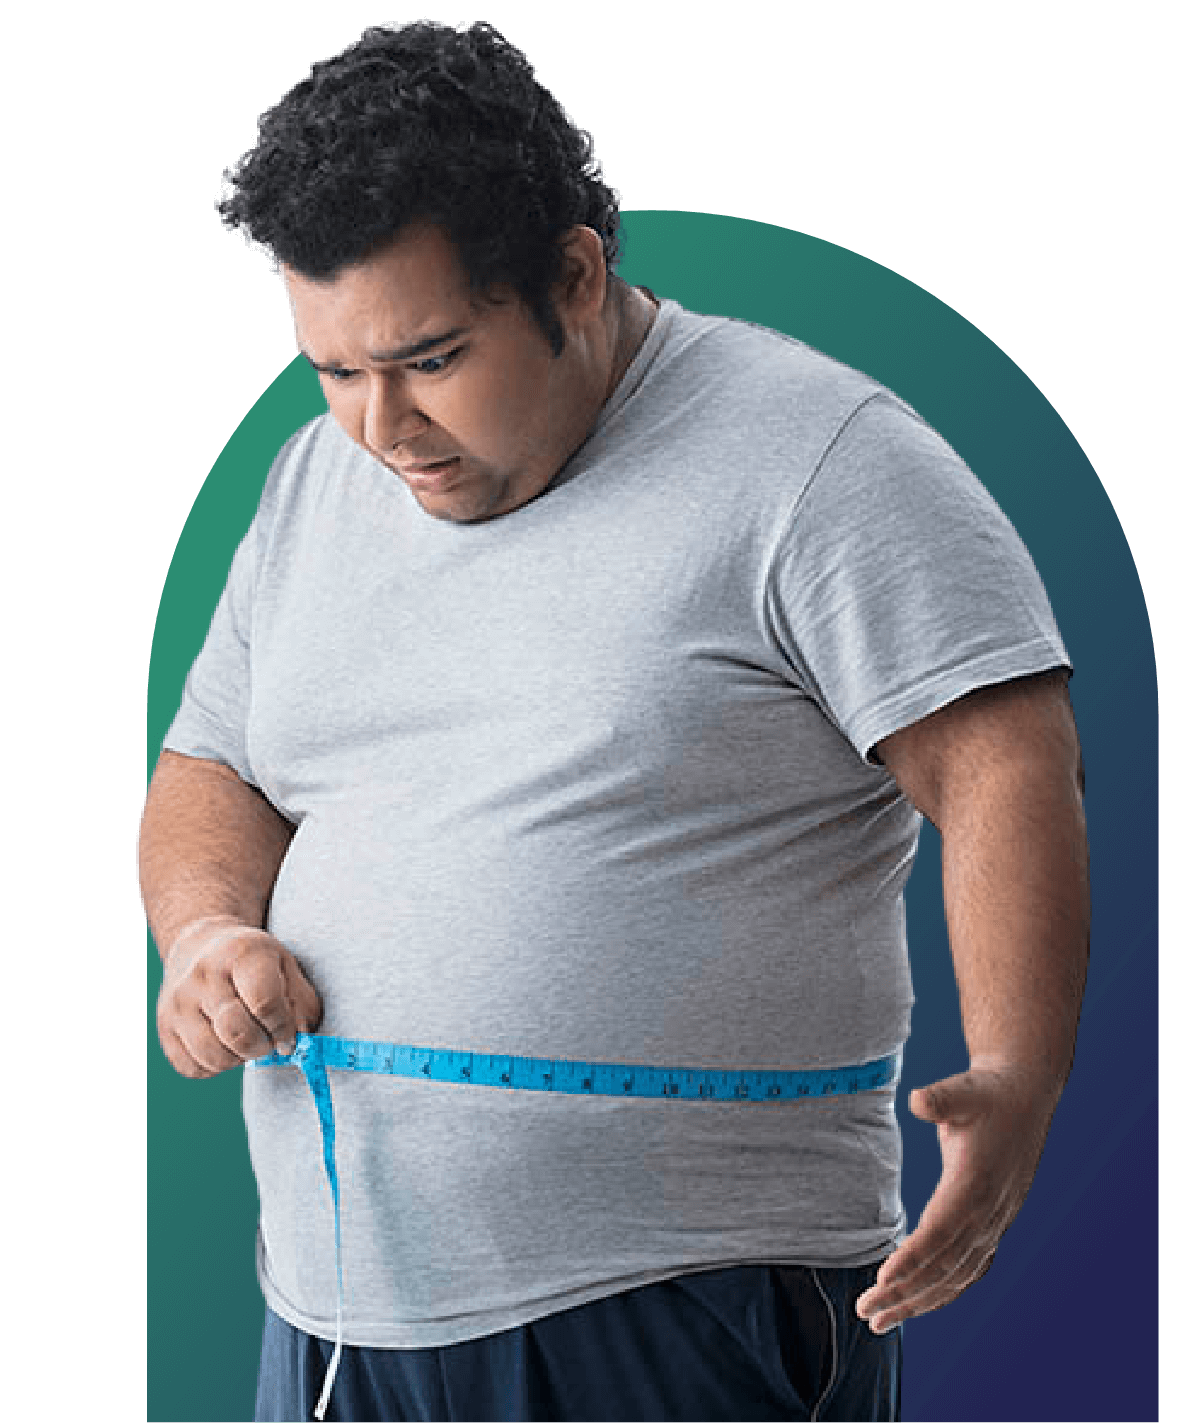 Weight loss program for men